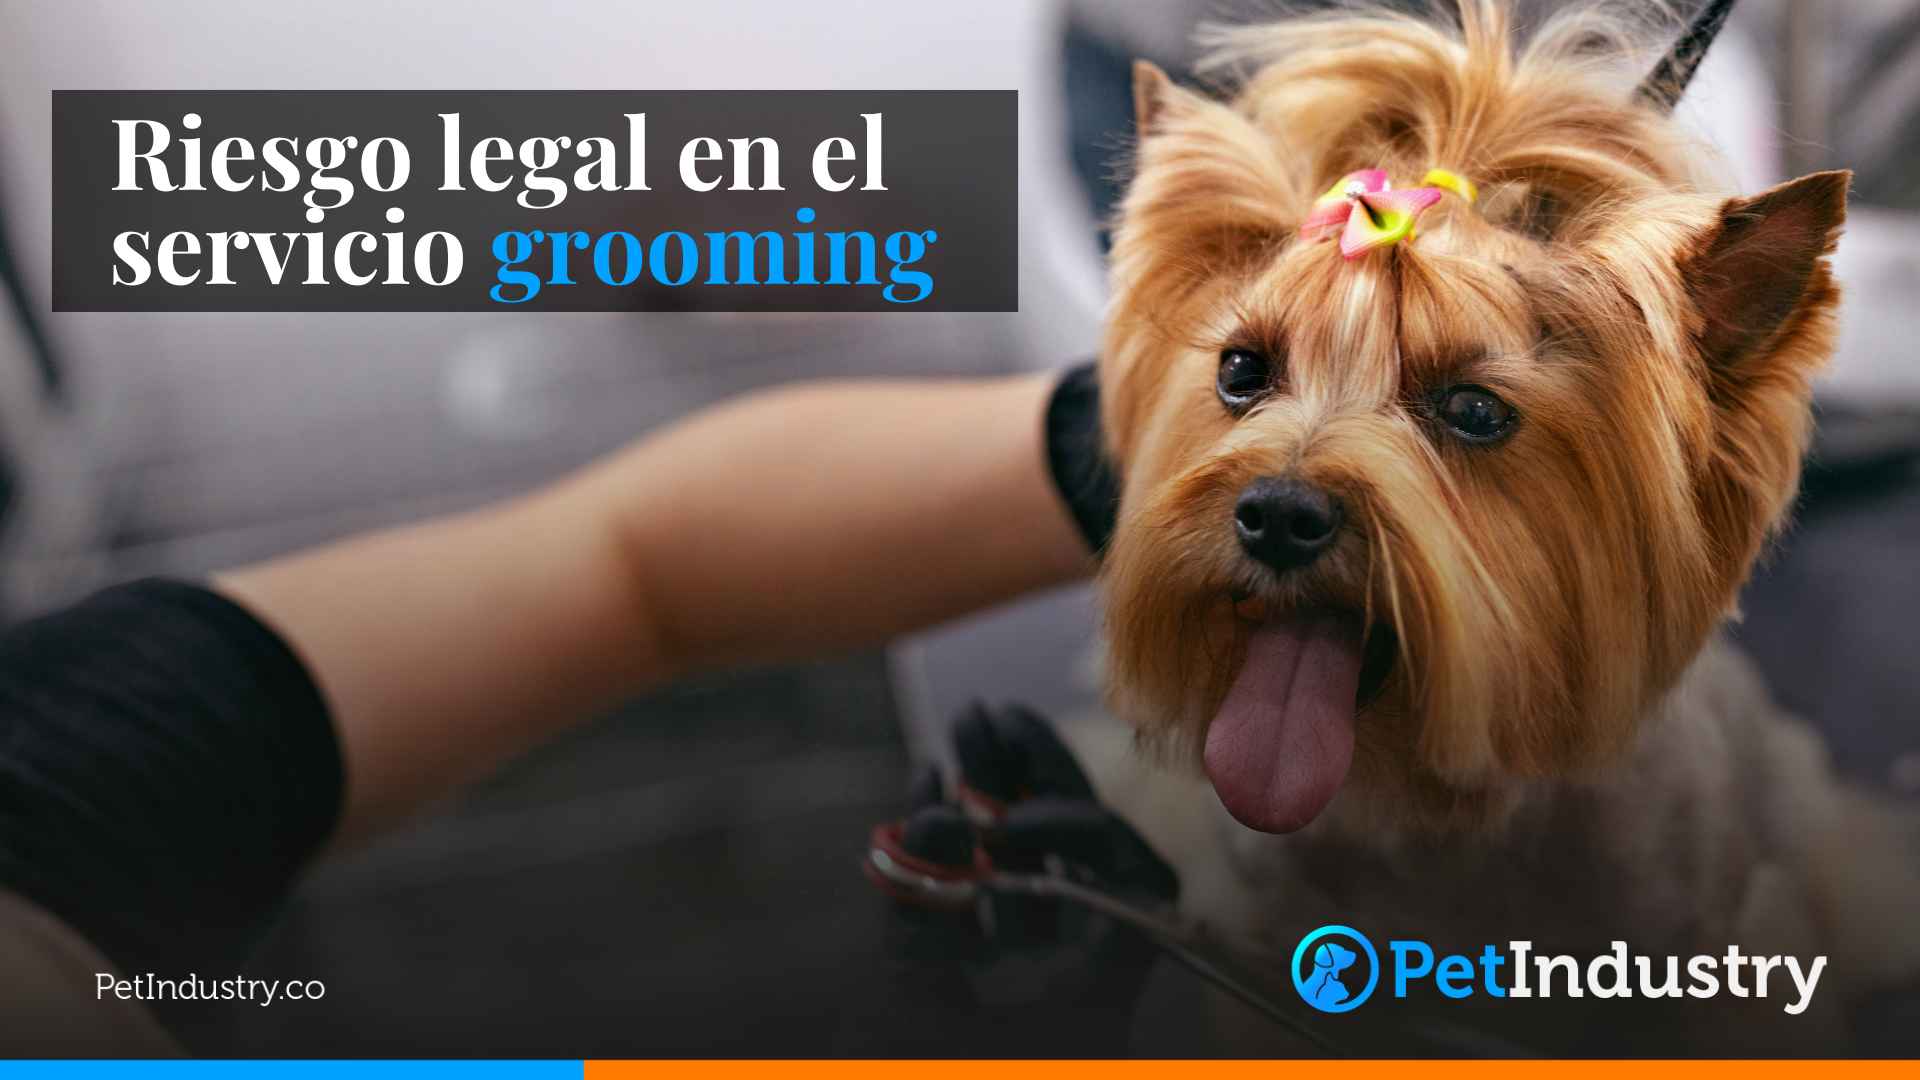 Riesgo legal en el servicio grooming